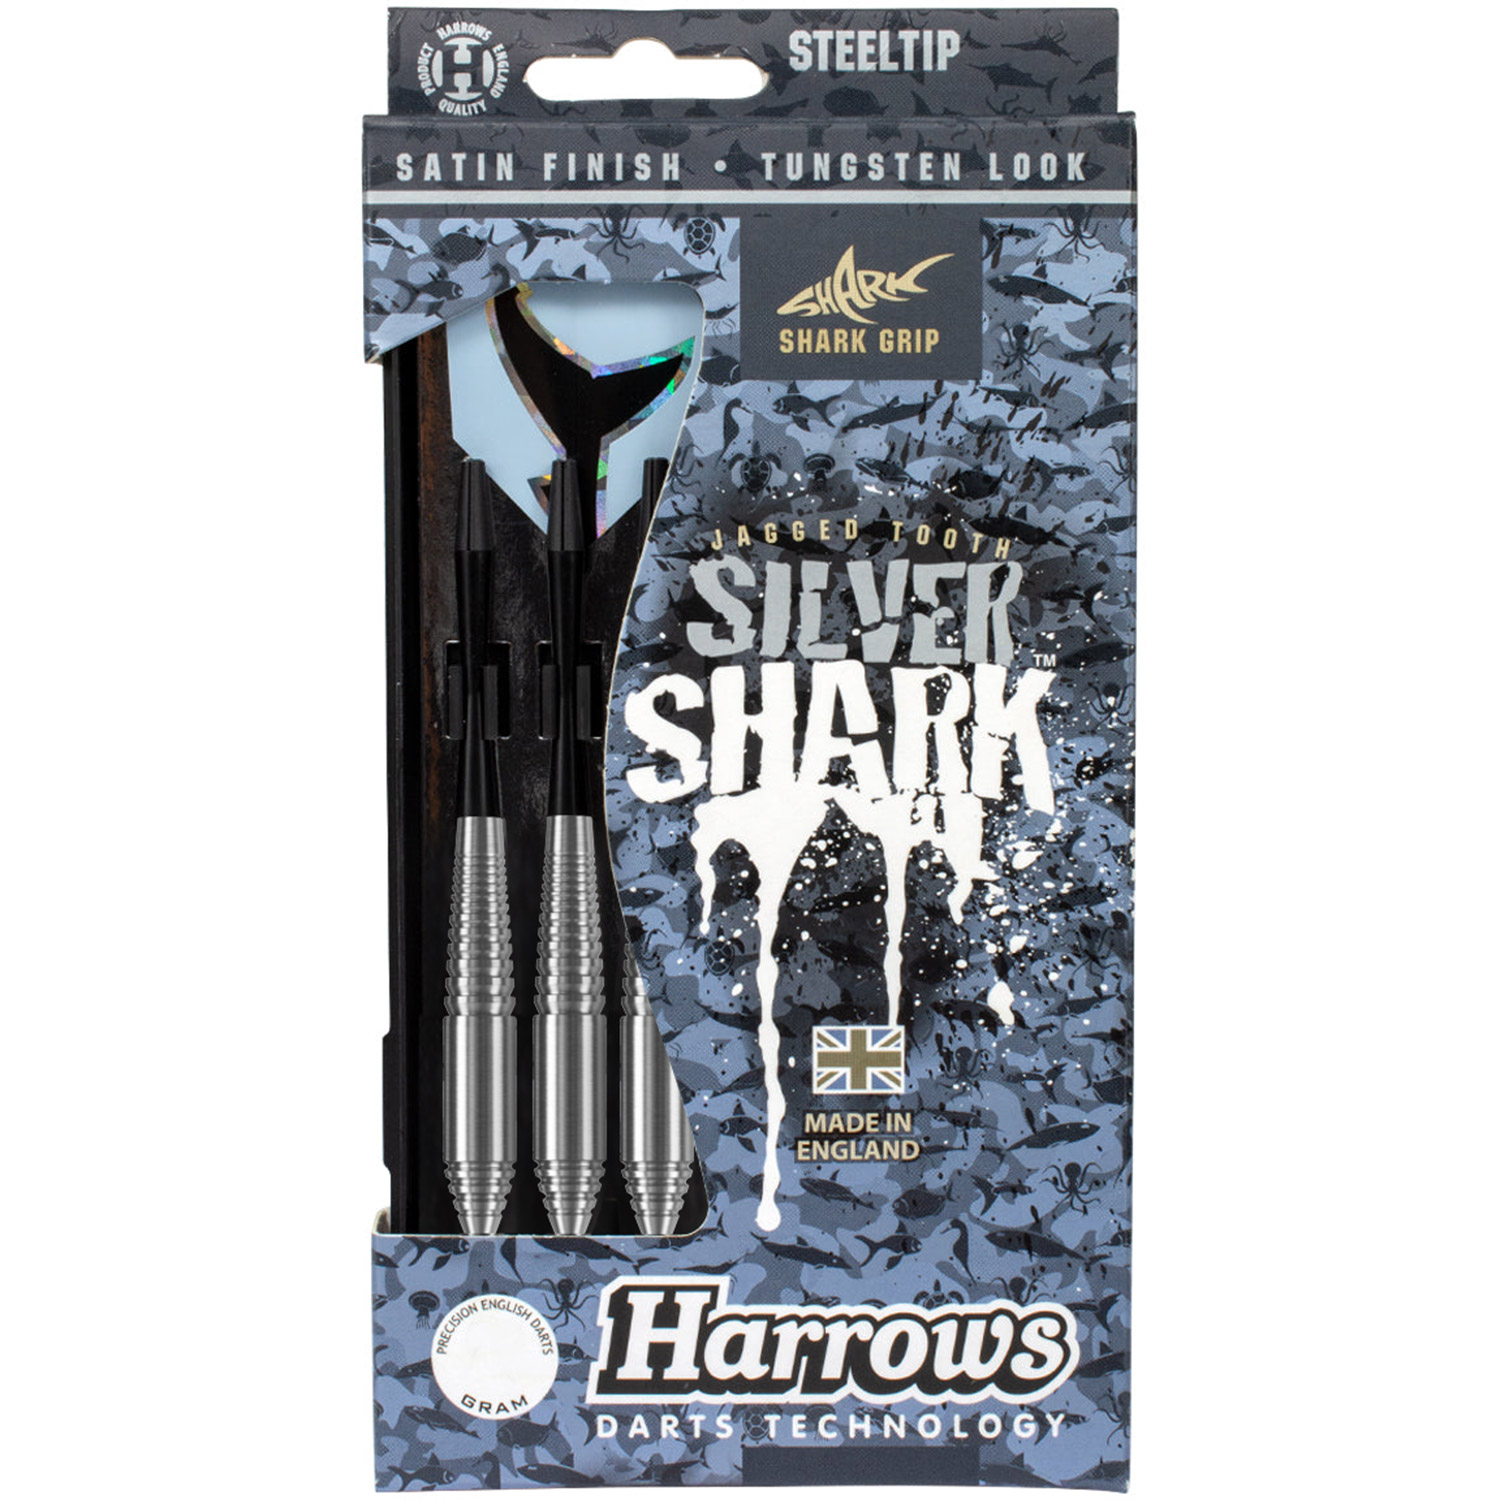 Harrows Silver Shark darts 22 grams